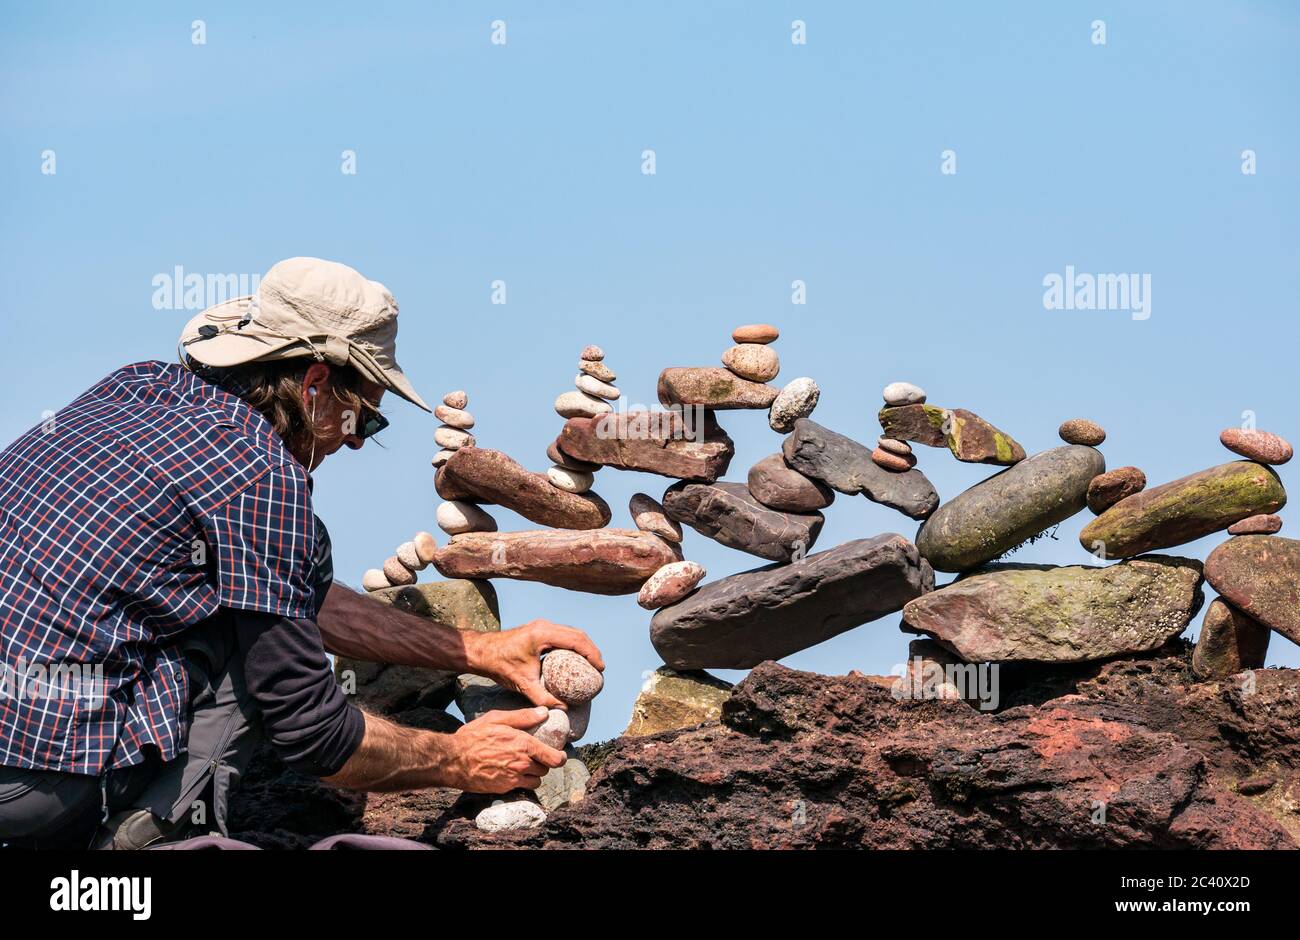 Pedro Duran pierres gerbeur d'équilibrage, Championnat européen de pierre gerbeur, Eye Cave Beach, Dunbar, East Lothian, Écosse, Royaume-Uni Banque D'Images